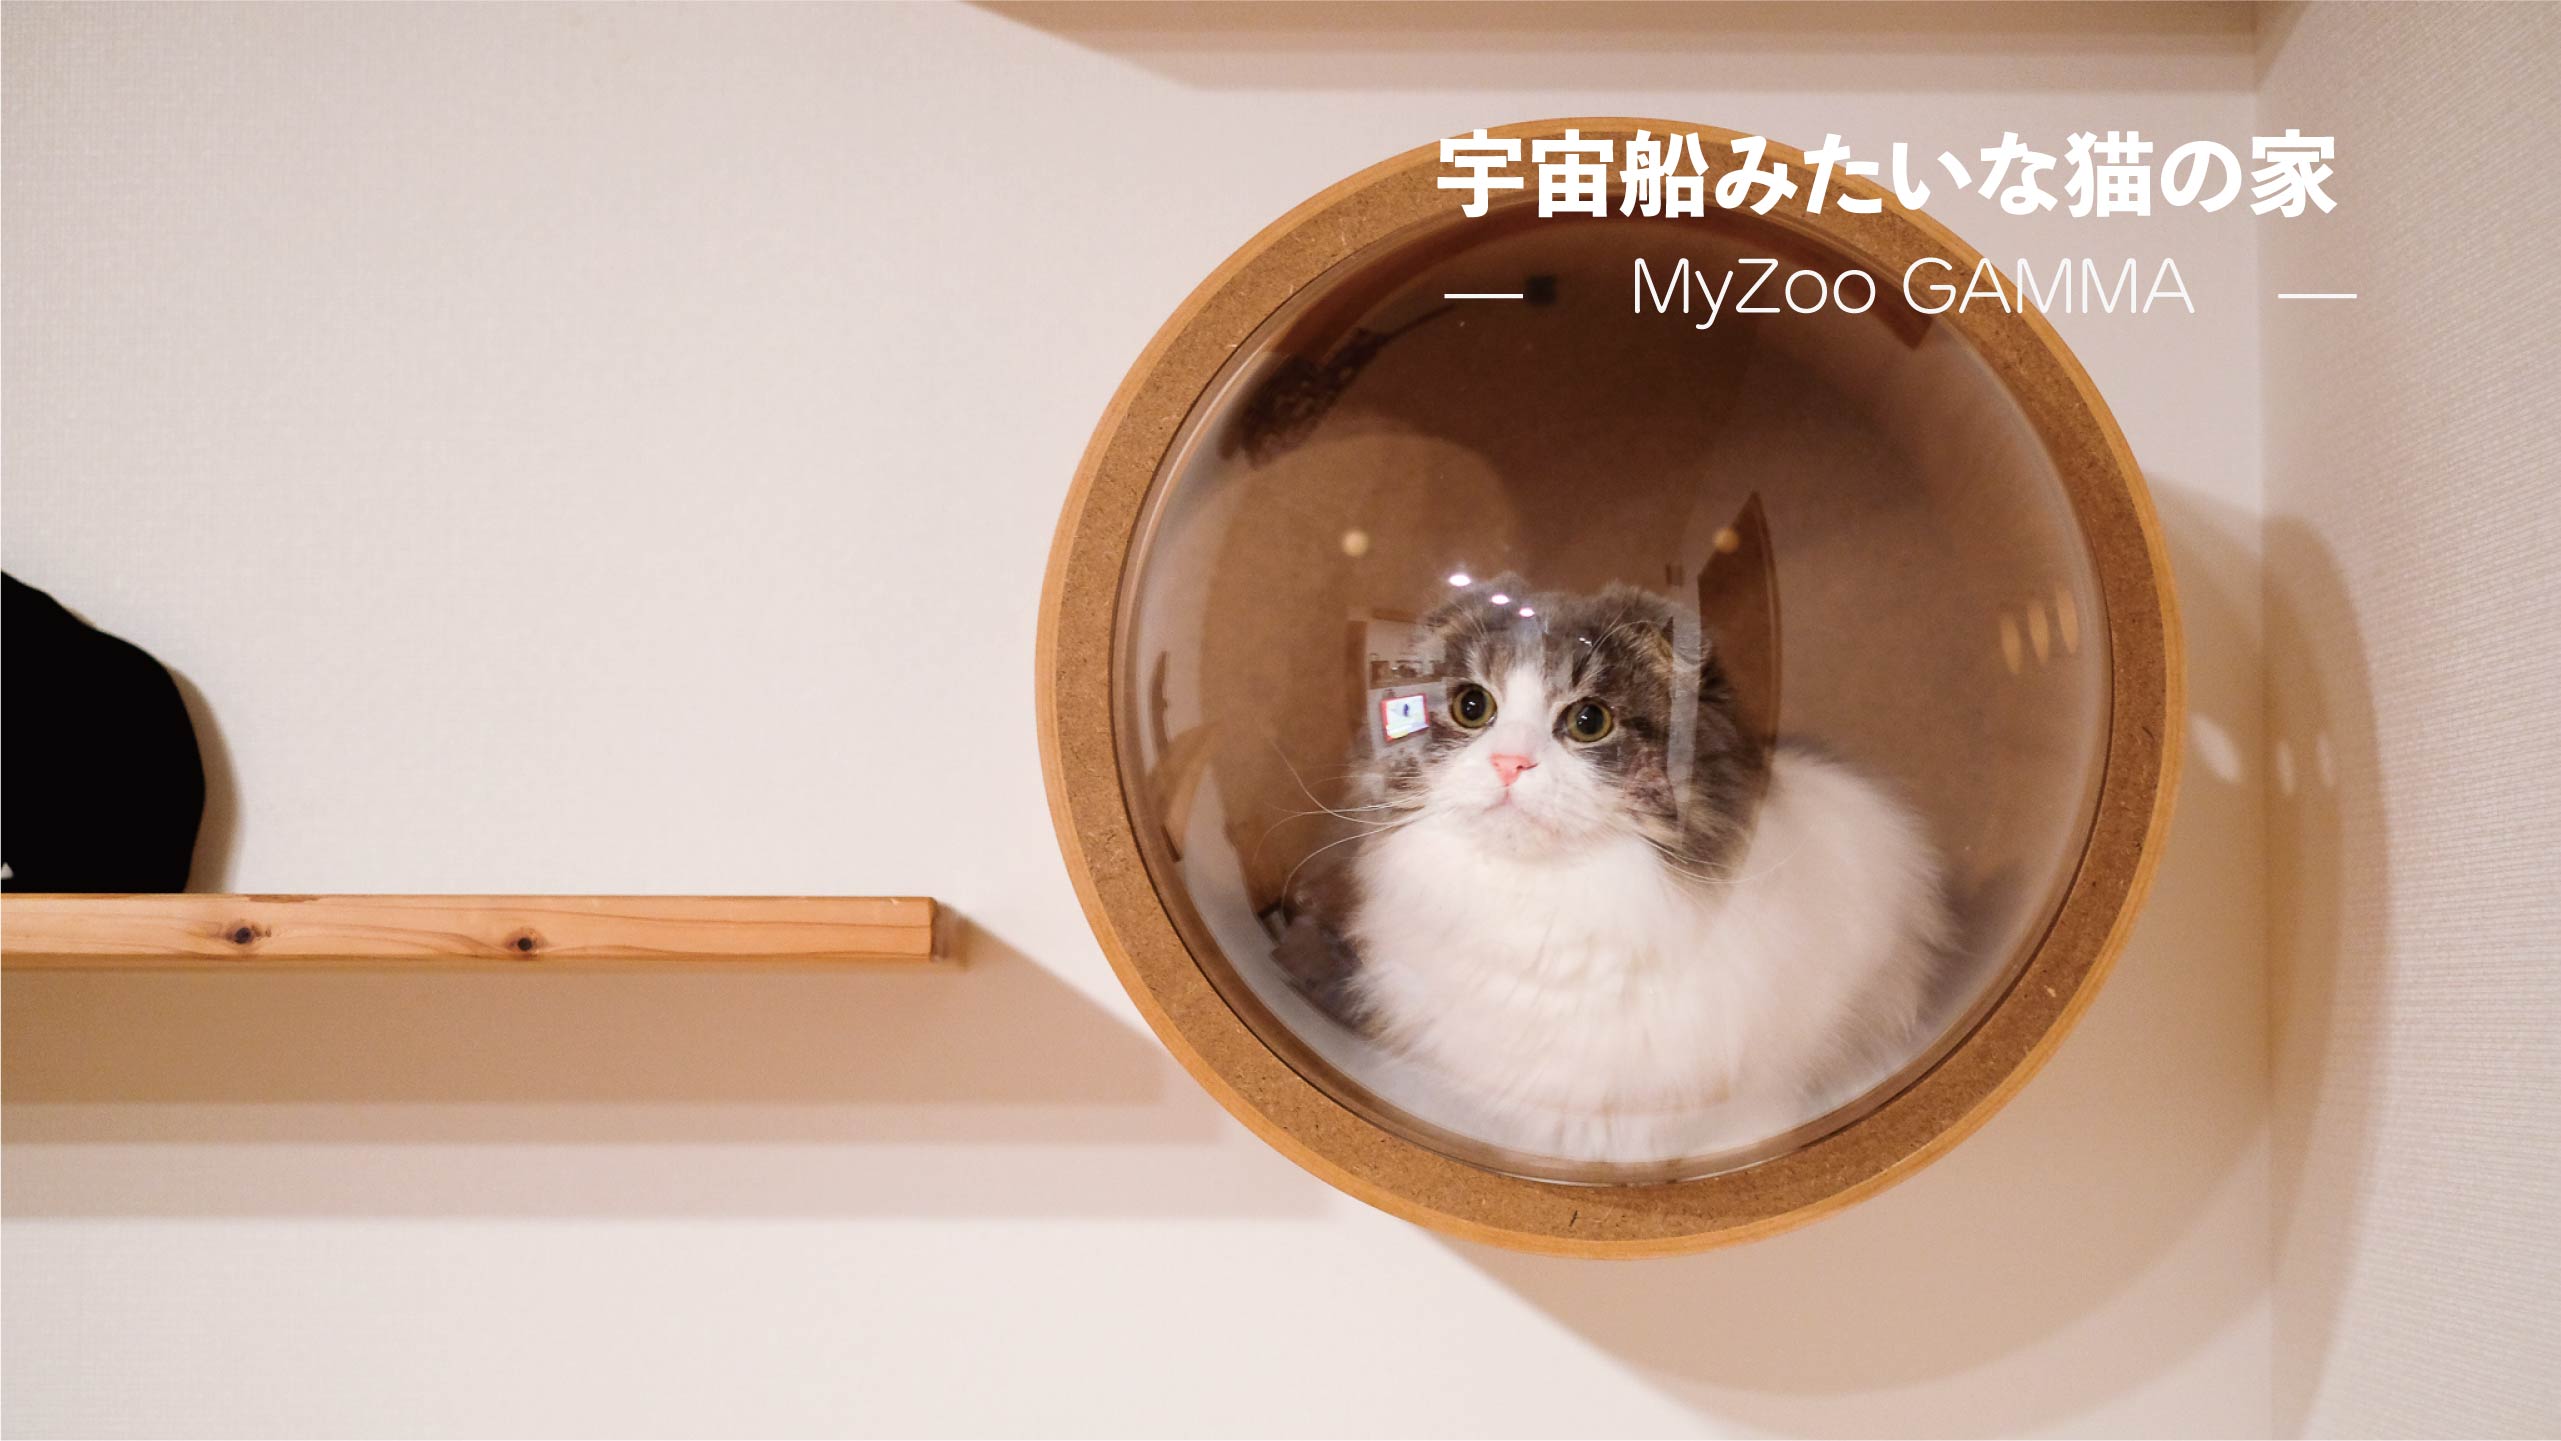 MYZOO マイズー 宇宙船 ウォーク #猫 壁付けタイプ猫用ベッド